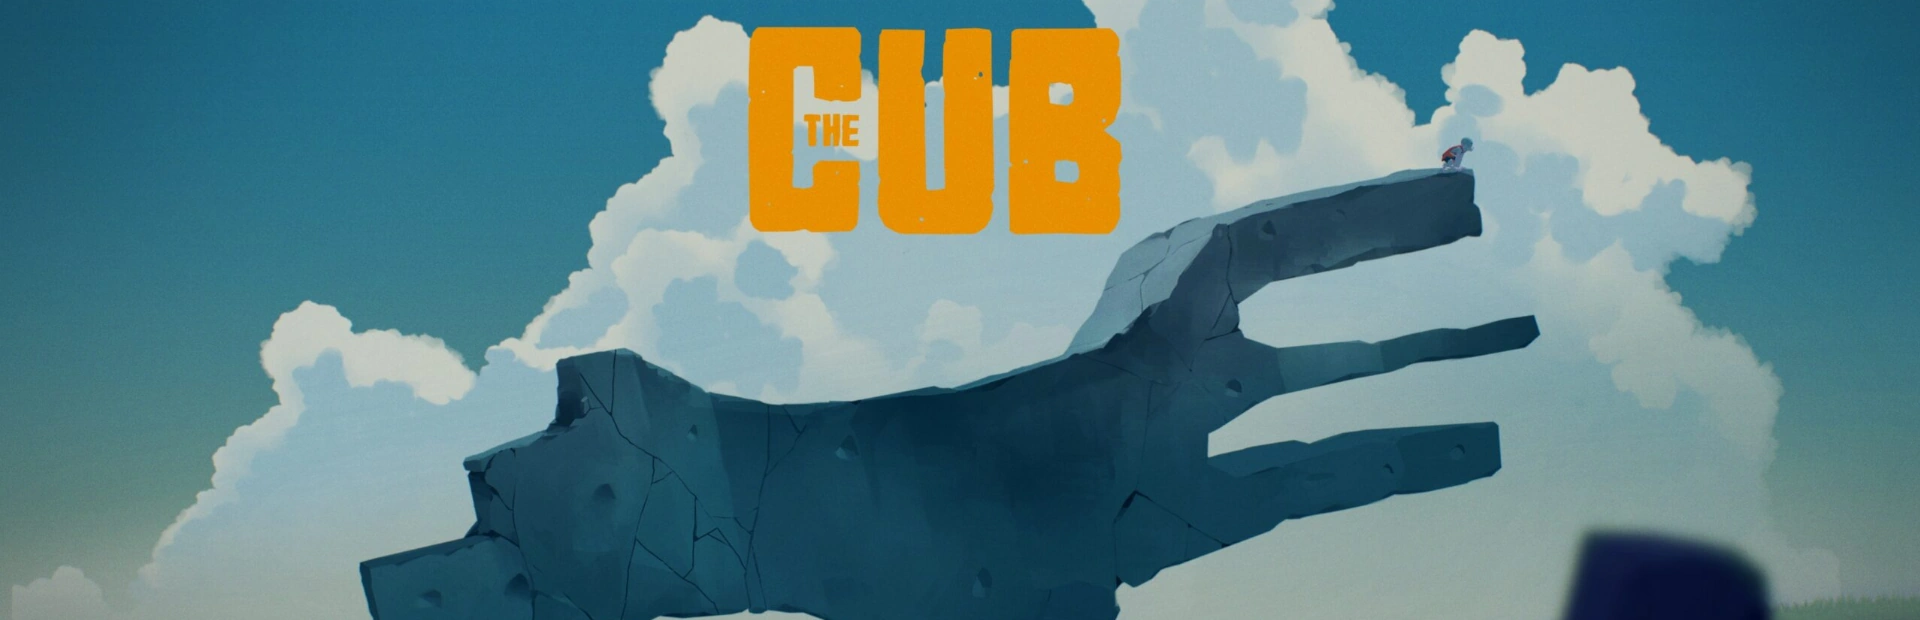 دانلود بازی The Cub برای کامپیوتر  | گیمباتو